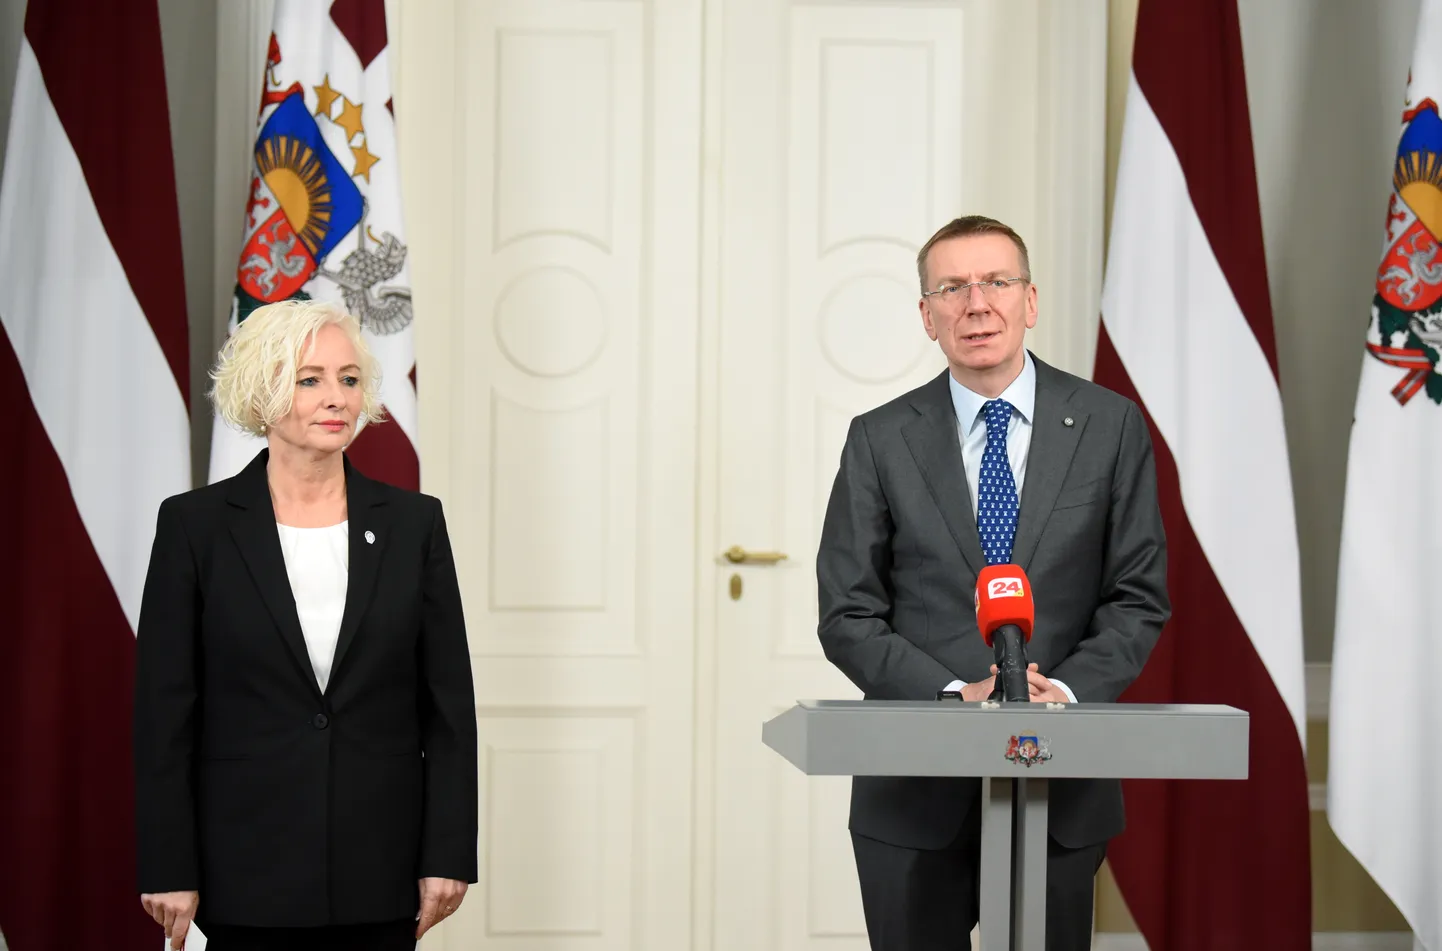 Saeimas priekšsēdētāja Daiga Mieriņa un Valsts prezidents Edgars Rinkēvičs piedalās preses konferenē pēc tikšanās Rīgas pilī.